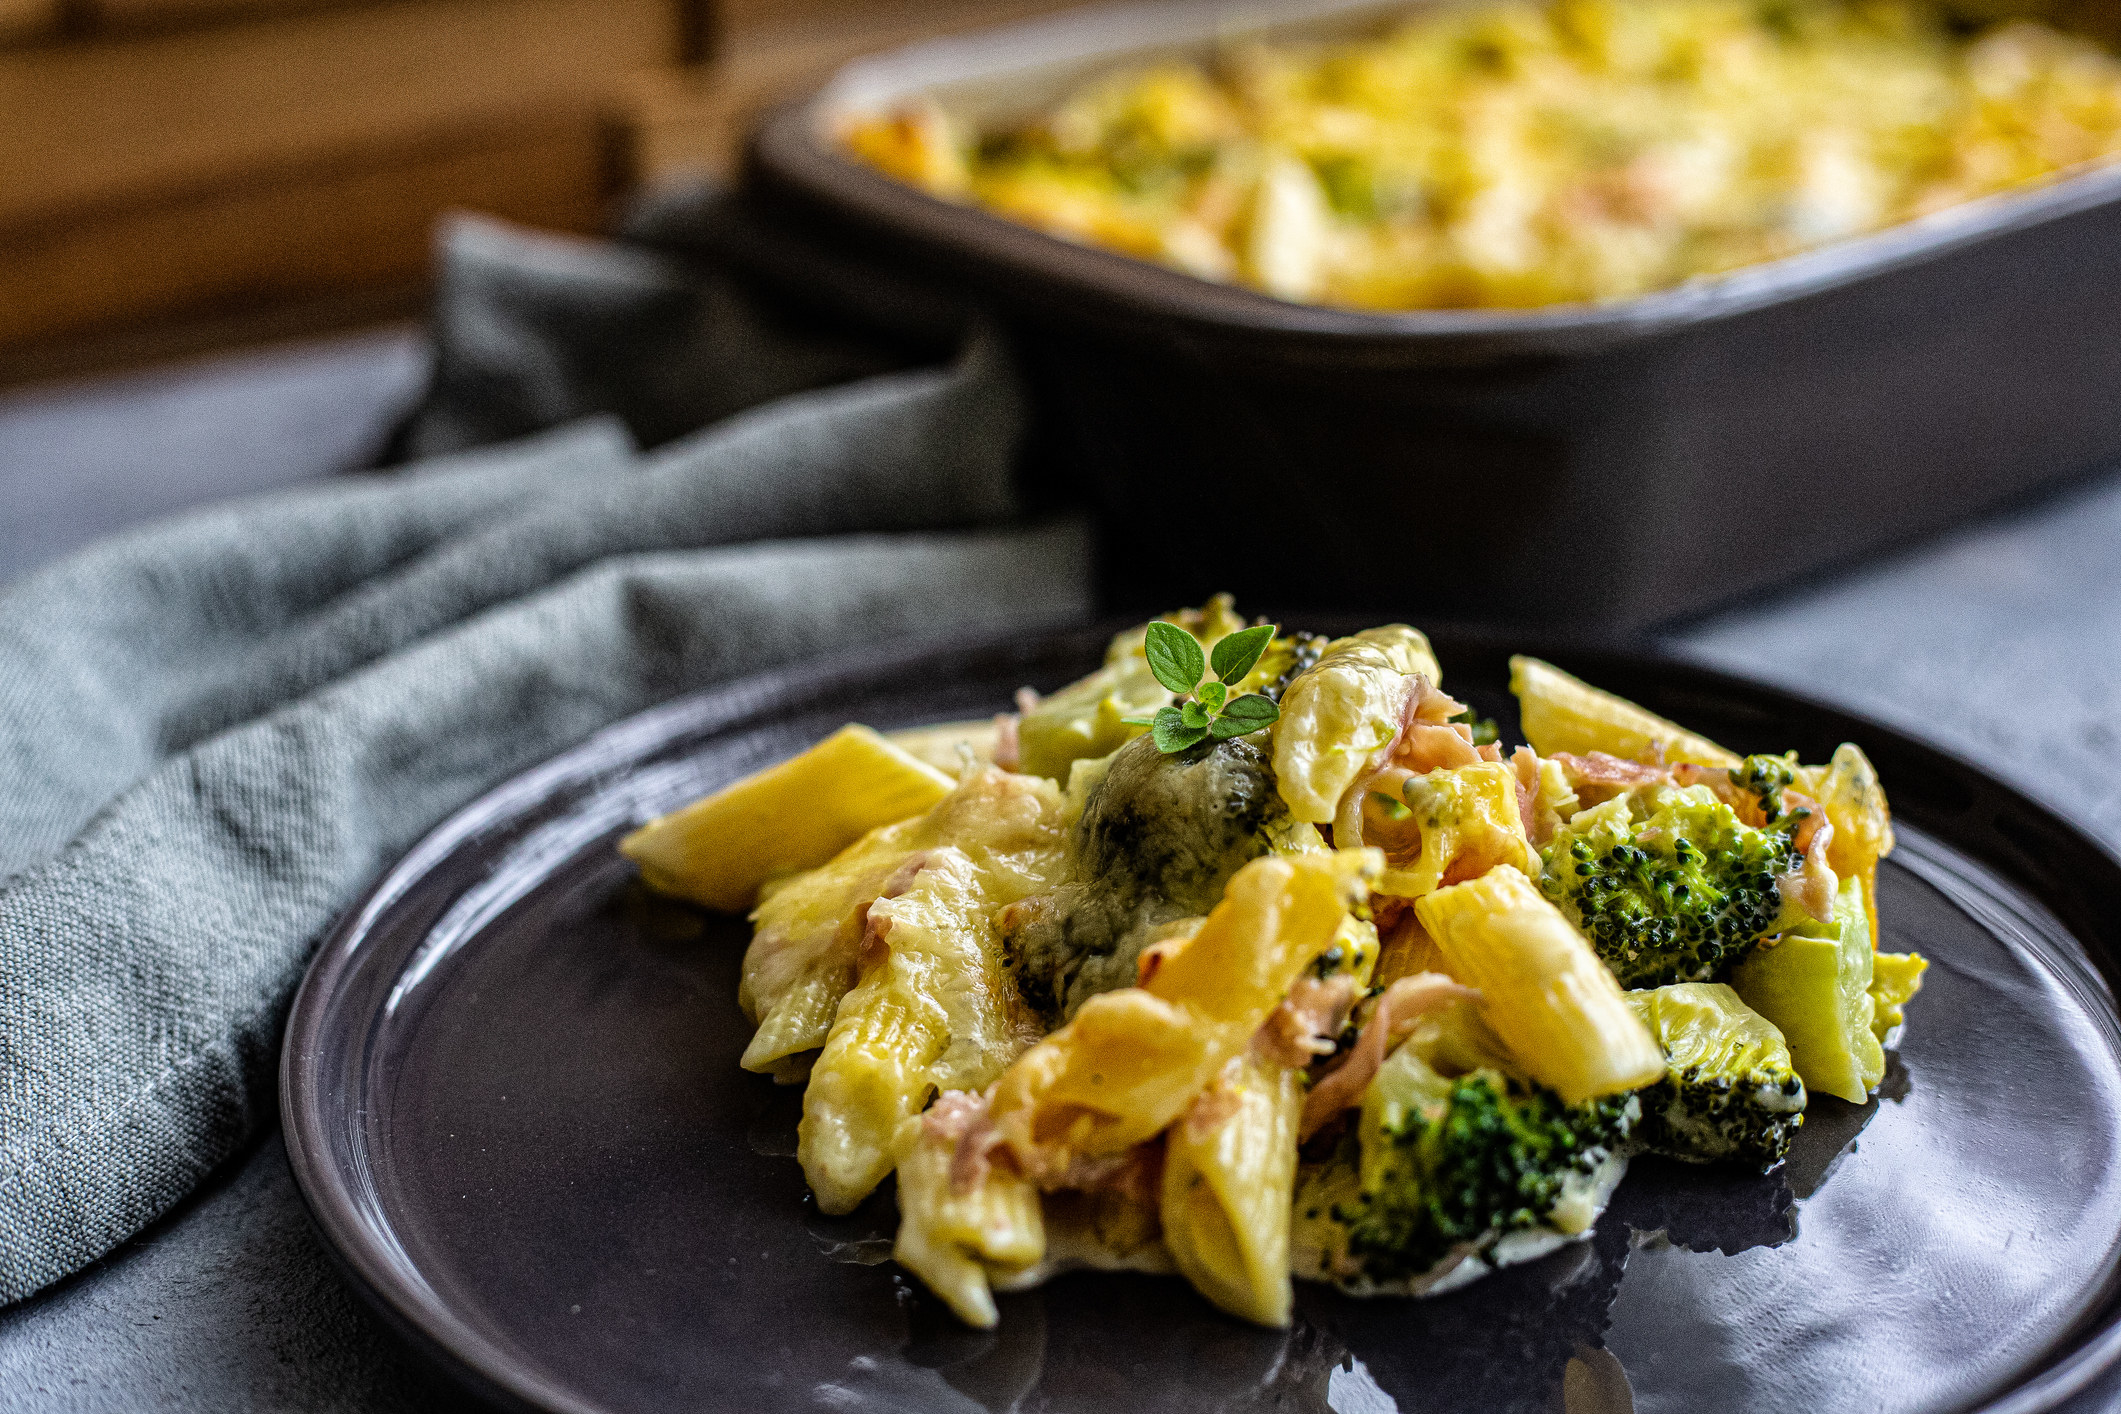 Broccoli and pasta casserole